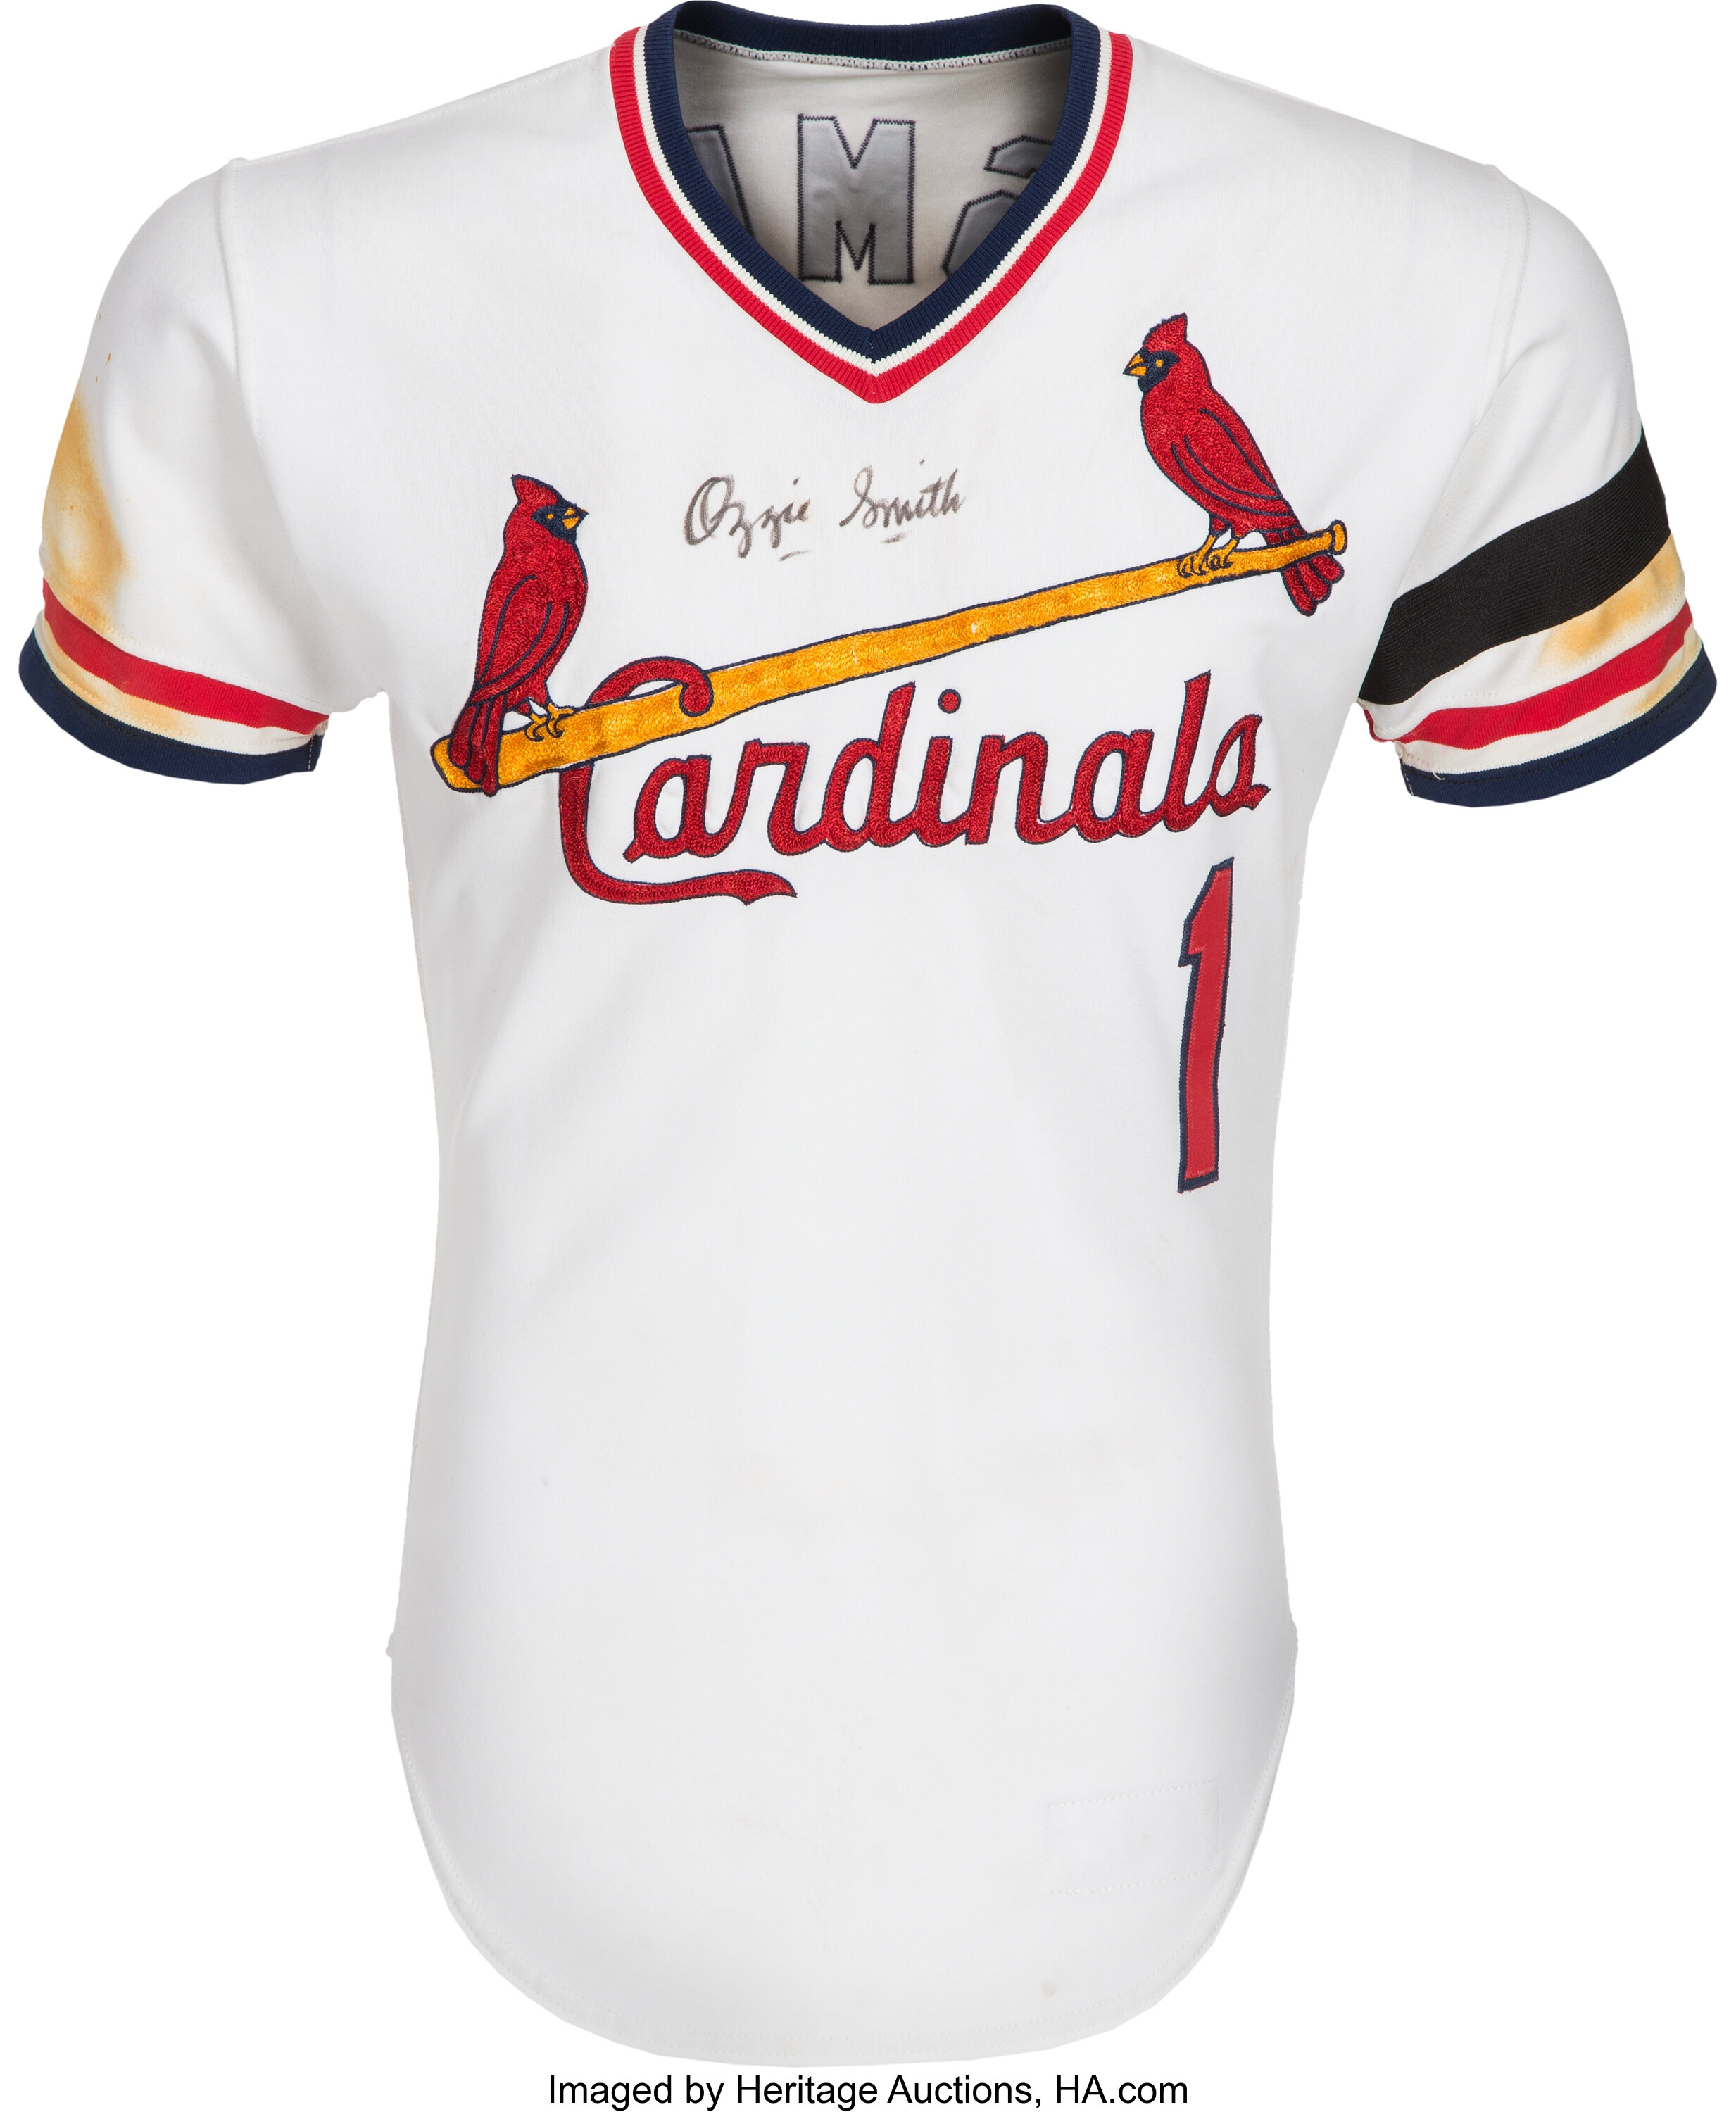 St. Louis Cardinals Jerseys in St. Louis Cardinals Team Shop 